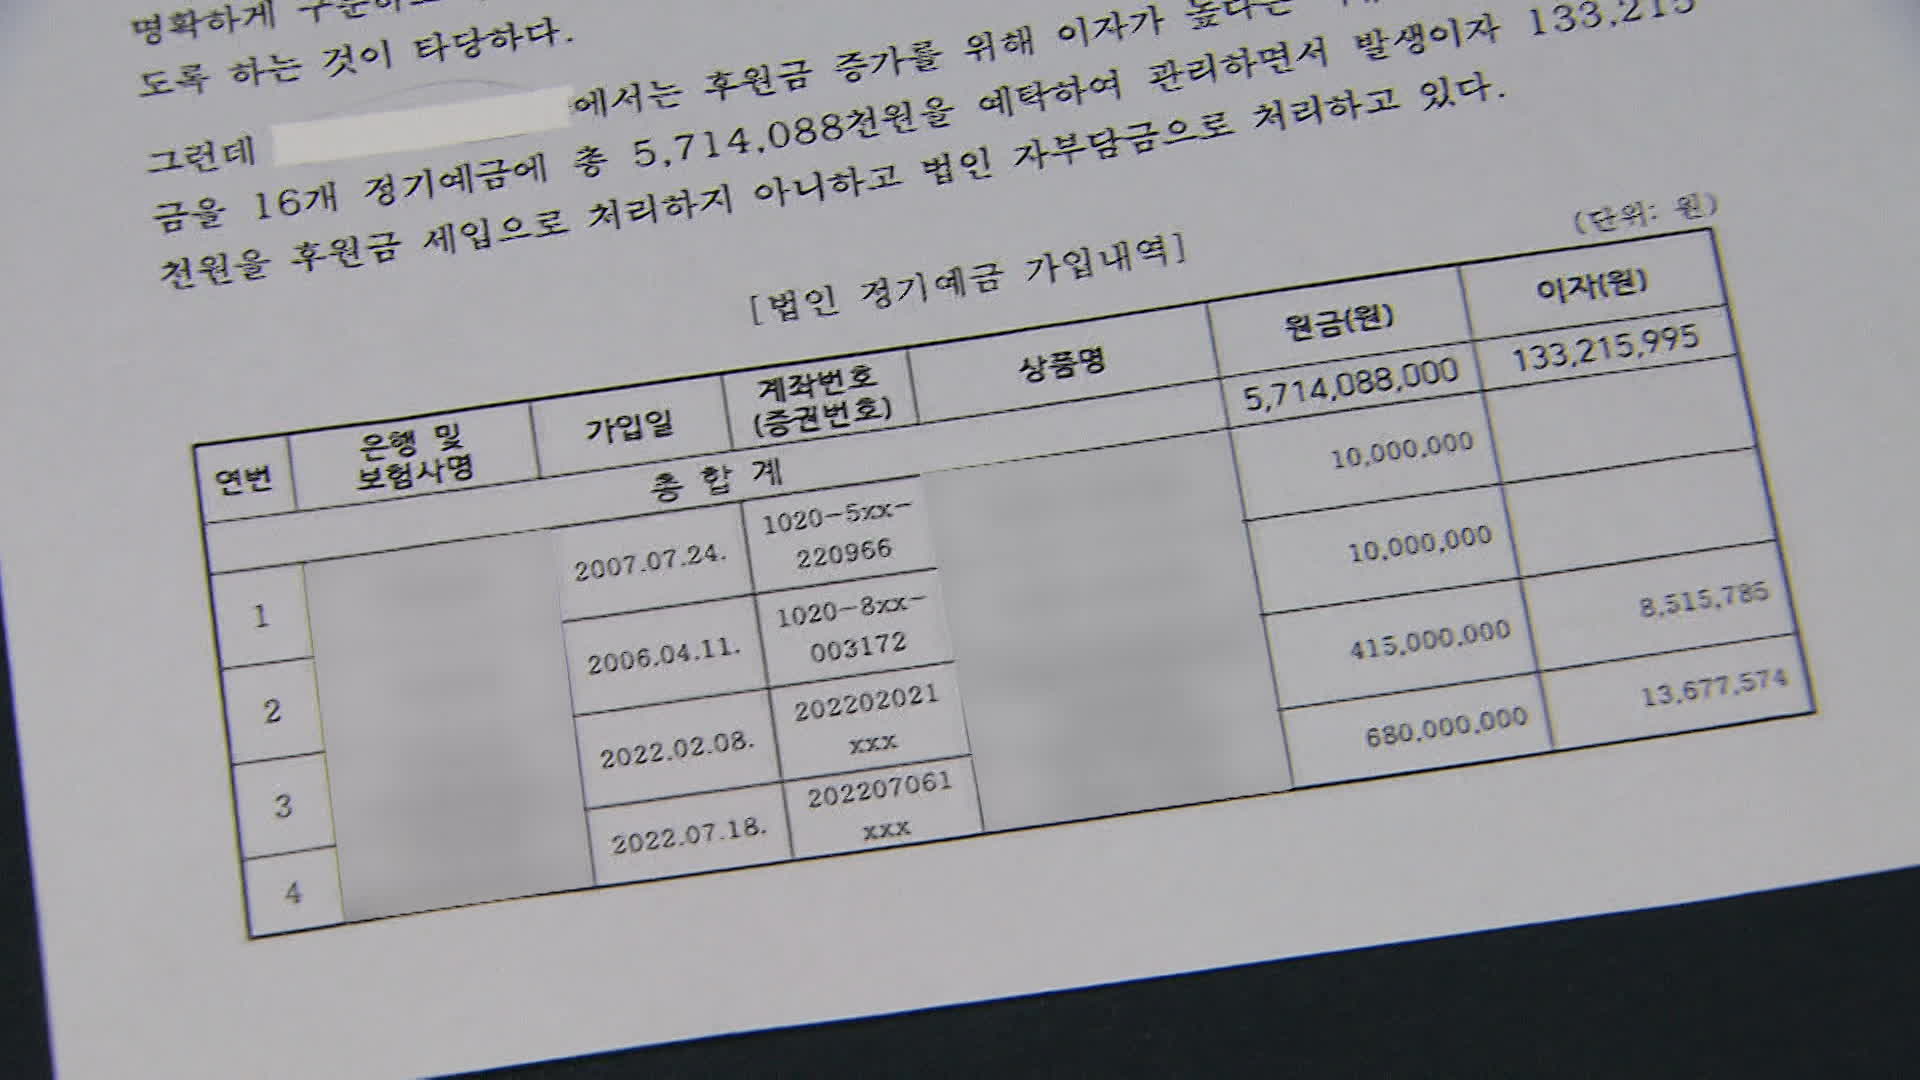 서울시 감사위원회의 감사 결과 일부. 후원금으로 총 16개의 정기예금에 가입한 사실이 확인됐다.